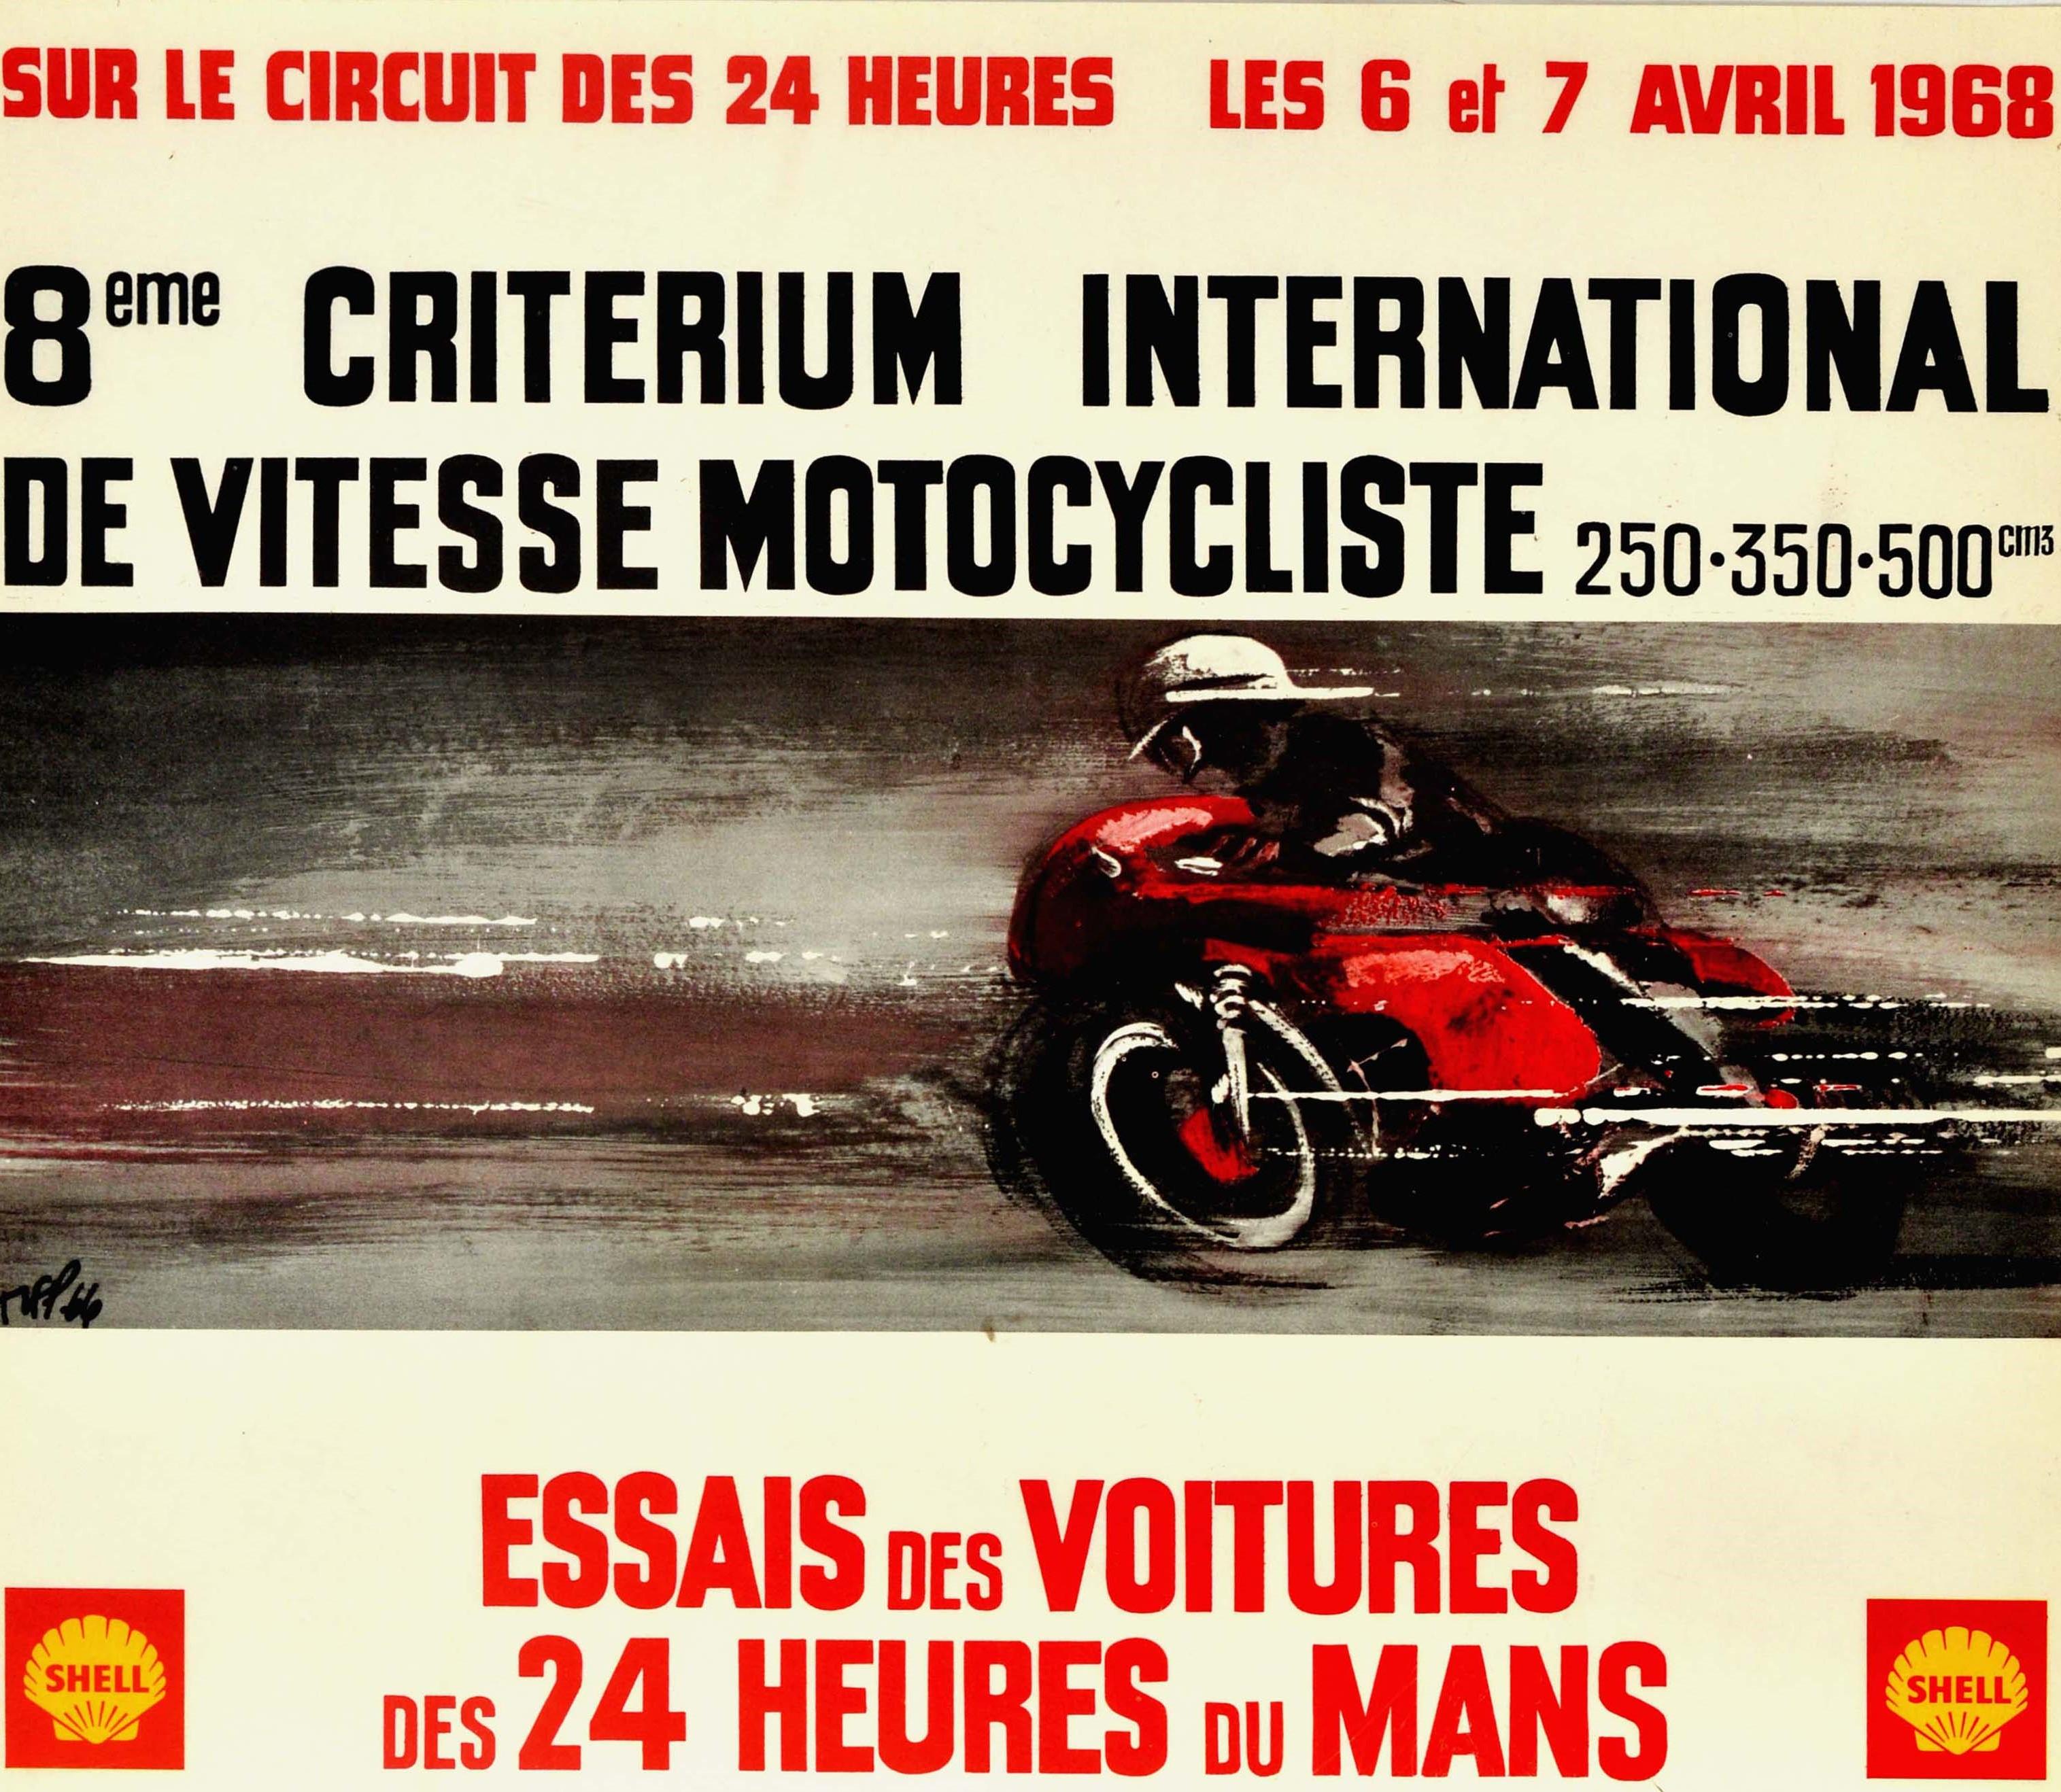 Original Vintage-Motorsportplakat für das 8eme Criterium International de Vitesse Motocycliste essais des voitures des 24 Heures du Mans sur les circuit des 24 heures les 6 et 7 Avril 1968 / 8. internationales Motorrad-Geschwindigkeitsevent und den